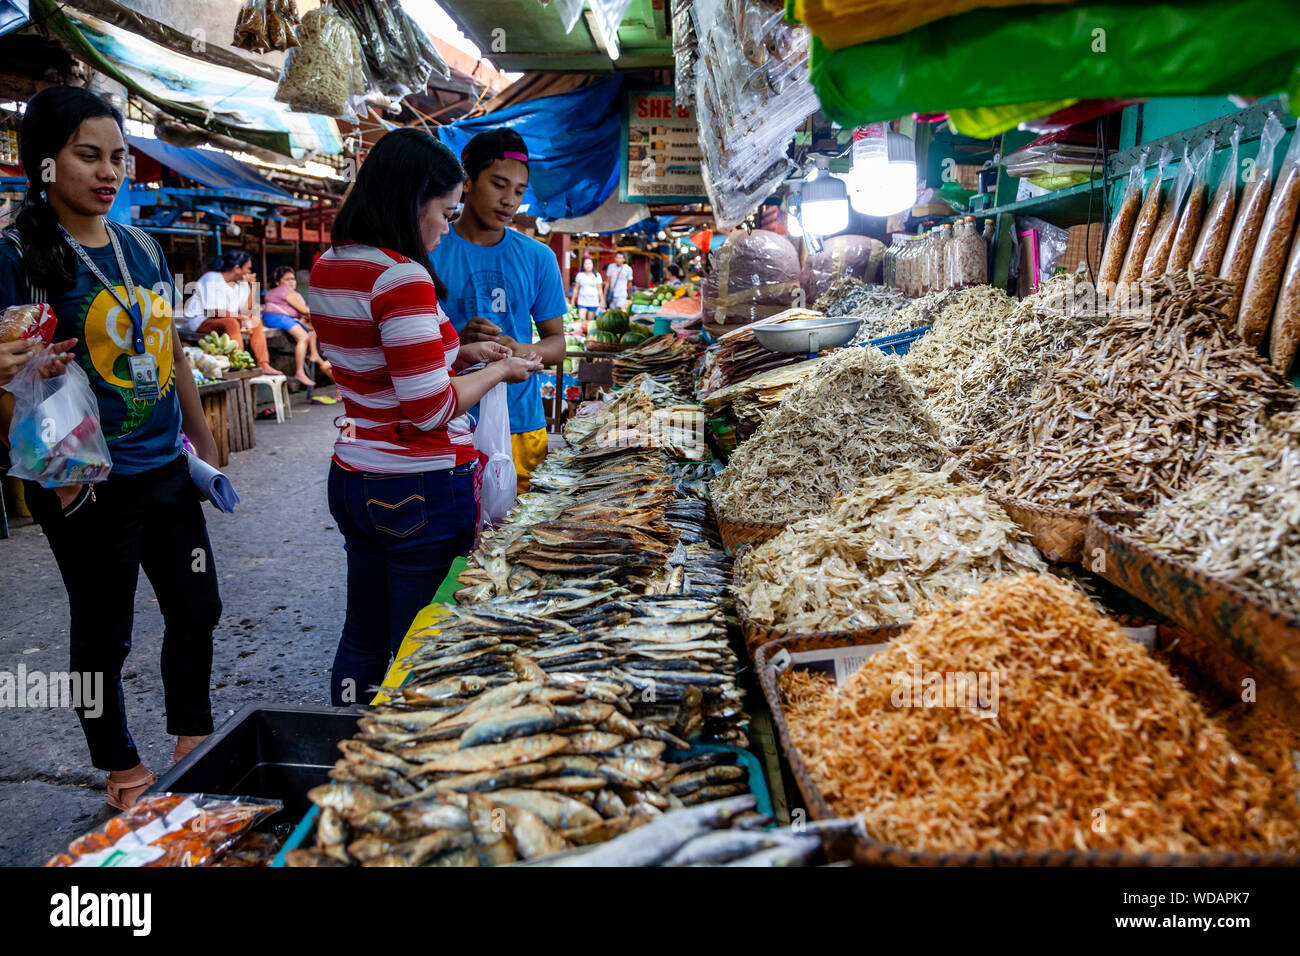 Poissons et fruits de mer séchés vendus à un marché dans la ville d'Iloilo, aux Philippines, l'île de Panay Banque D'Images